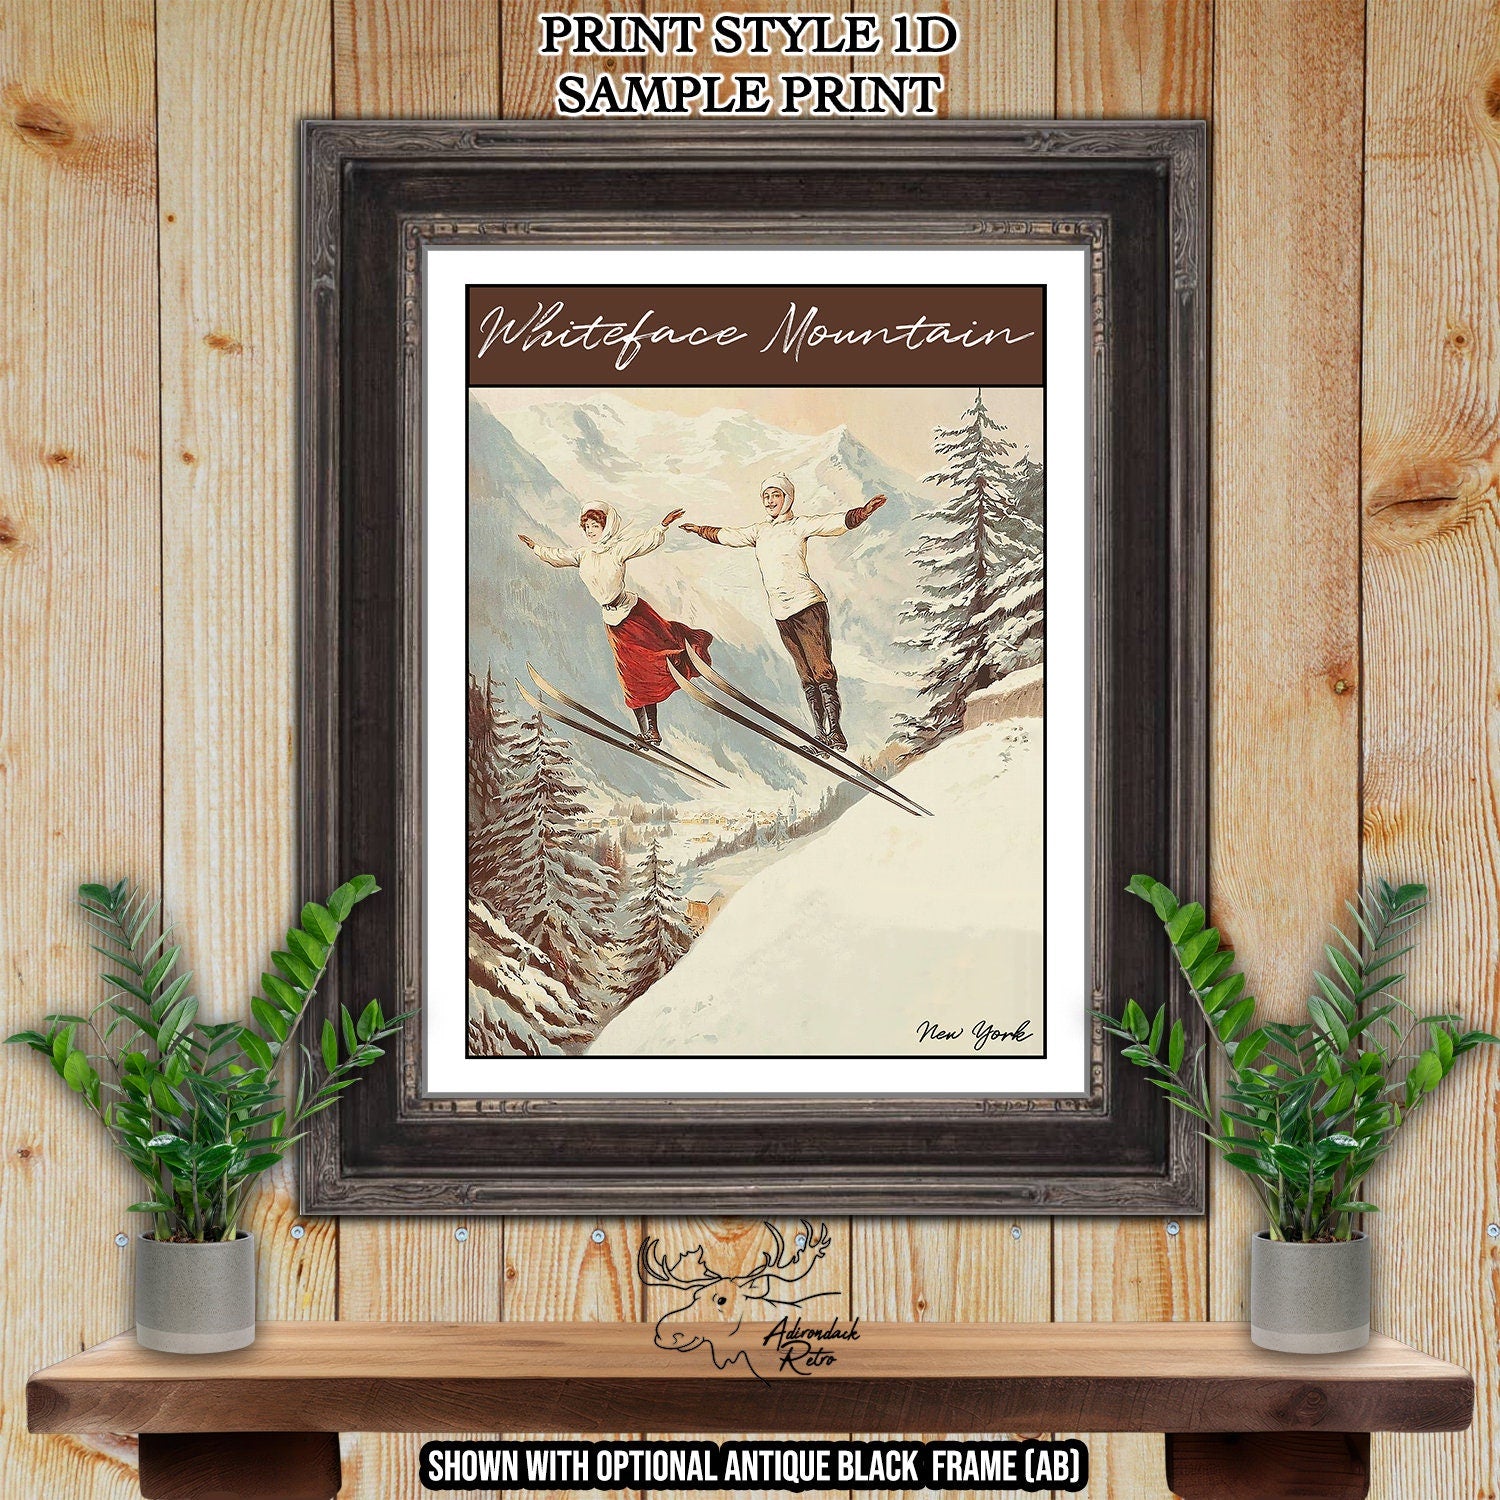 Beaver Mountain Utah Retro Ski Resort Print